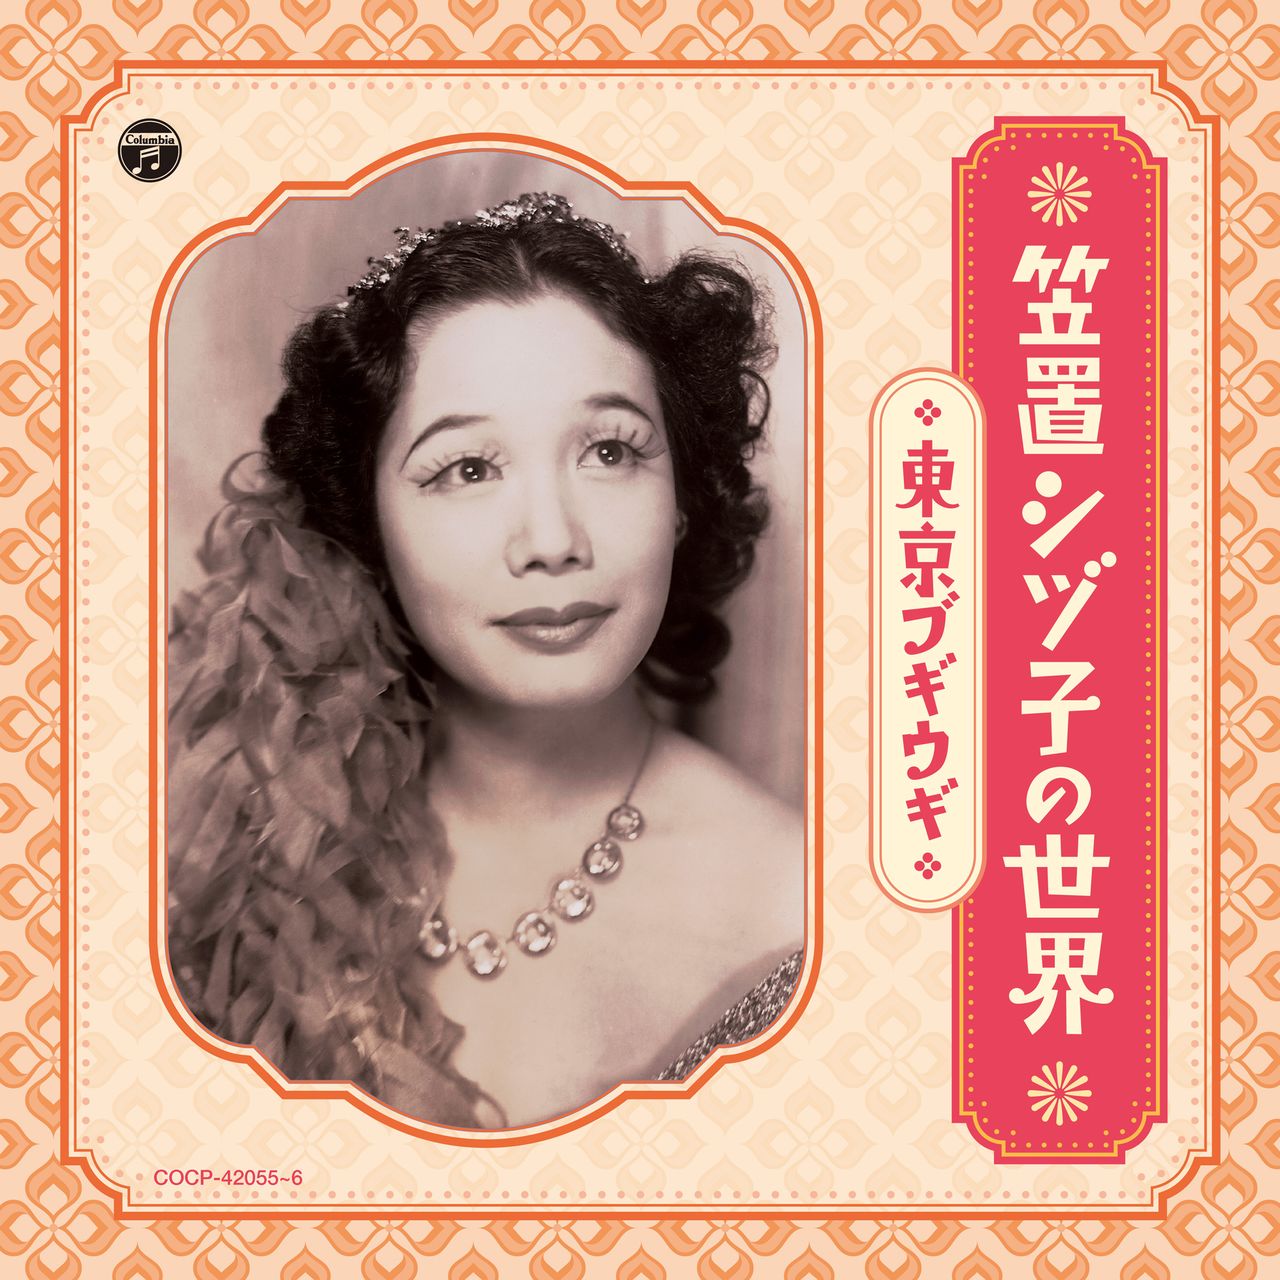 « Le monde de Kasagi Shizuko : Tokyo Boogie Woogie », un recueil de deux CD de chansons enregistrées par Kasagi, récemment publié par Nippon Columbia.